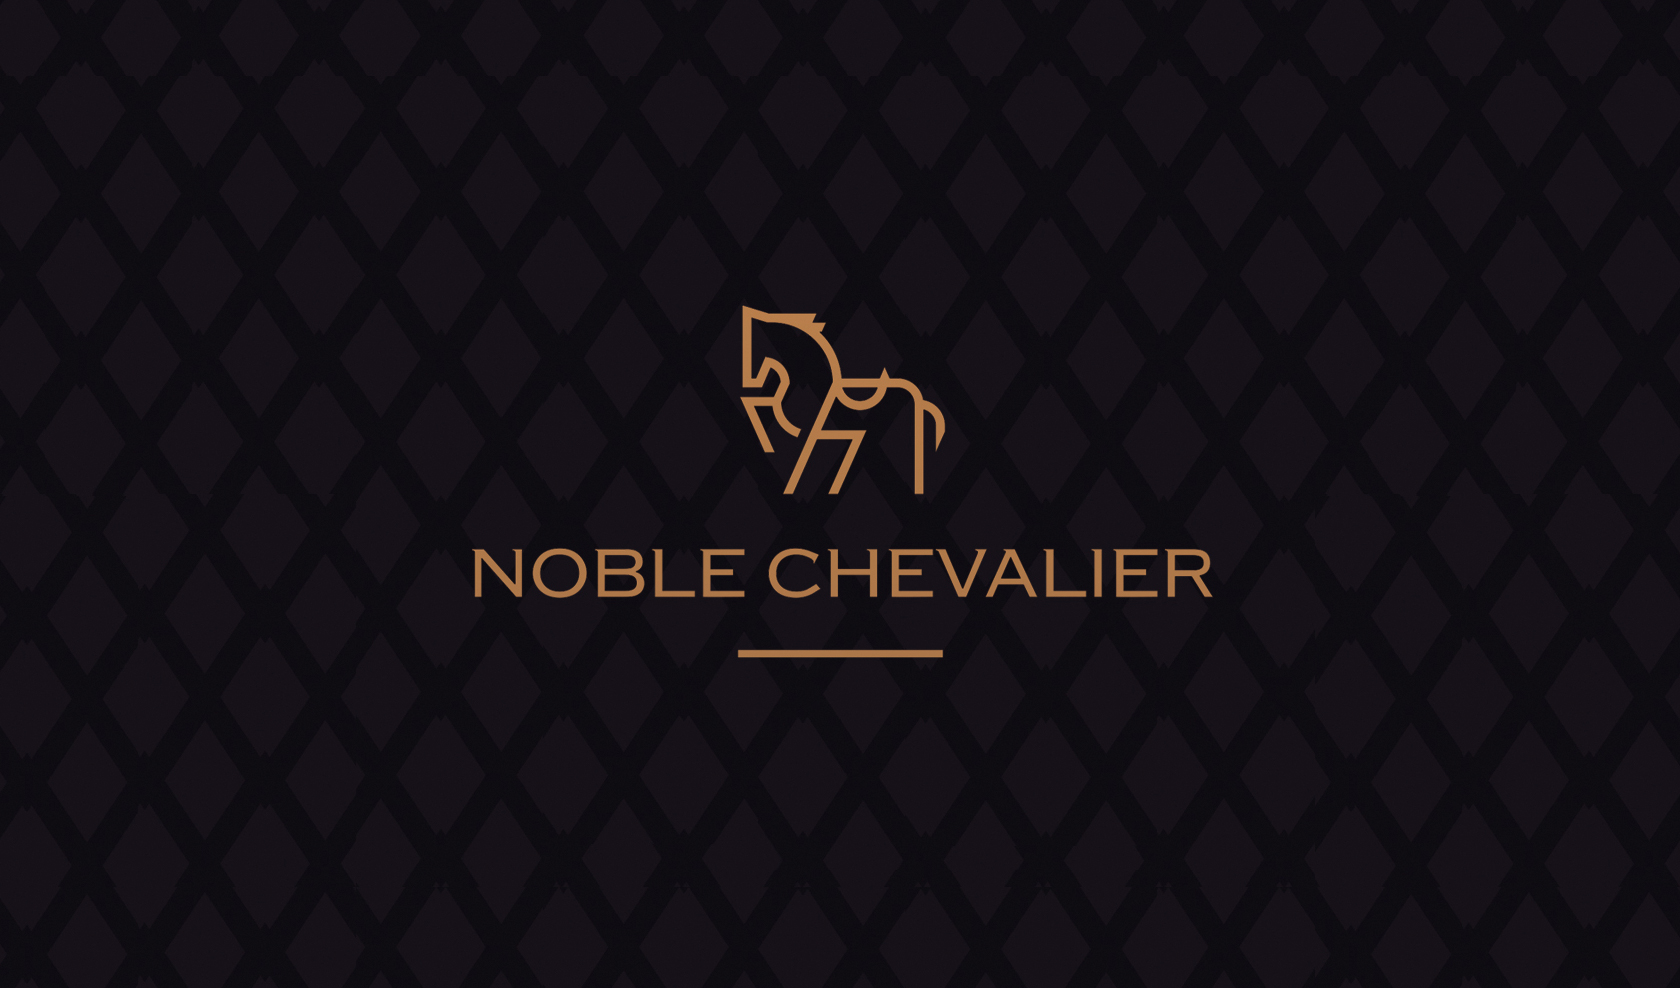 Noble Chevalier